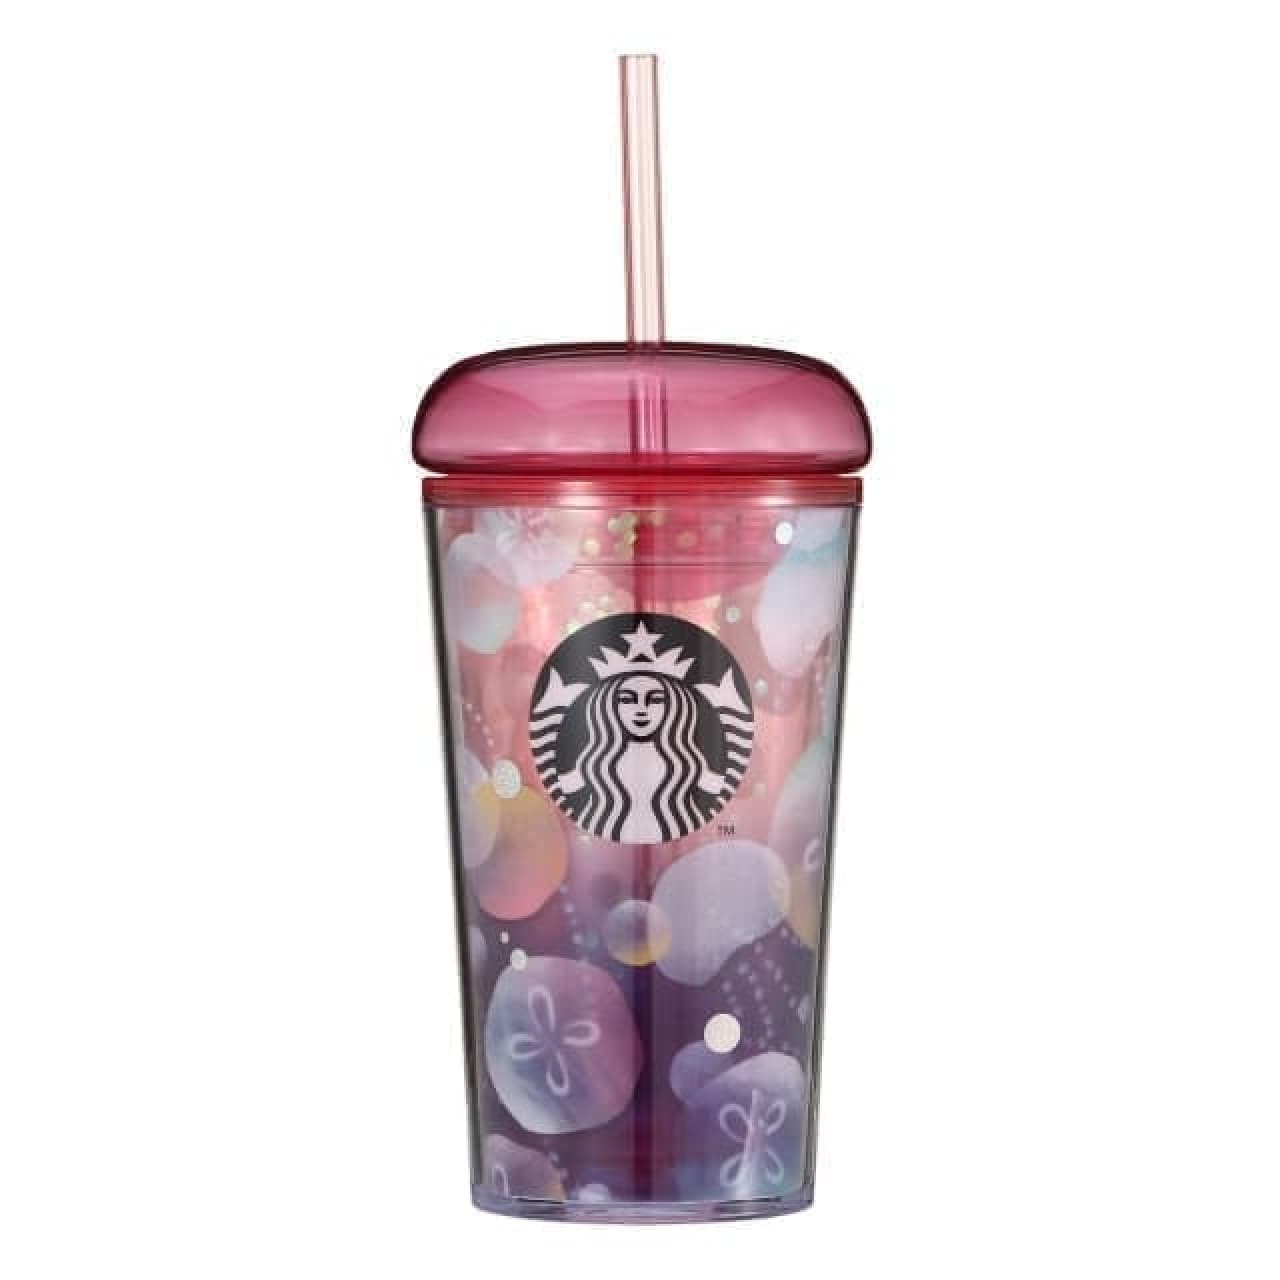 Starbucks summer goods